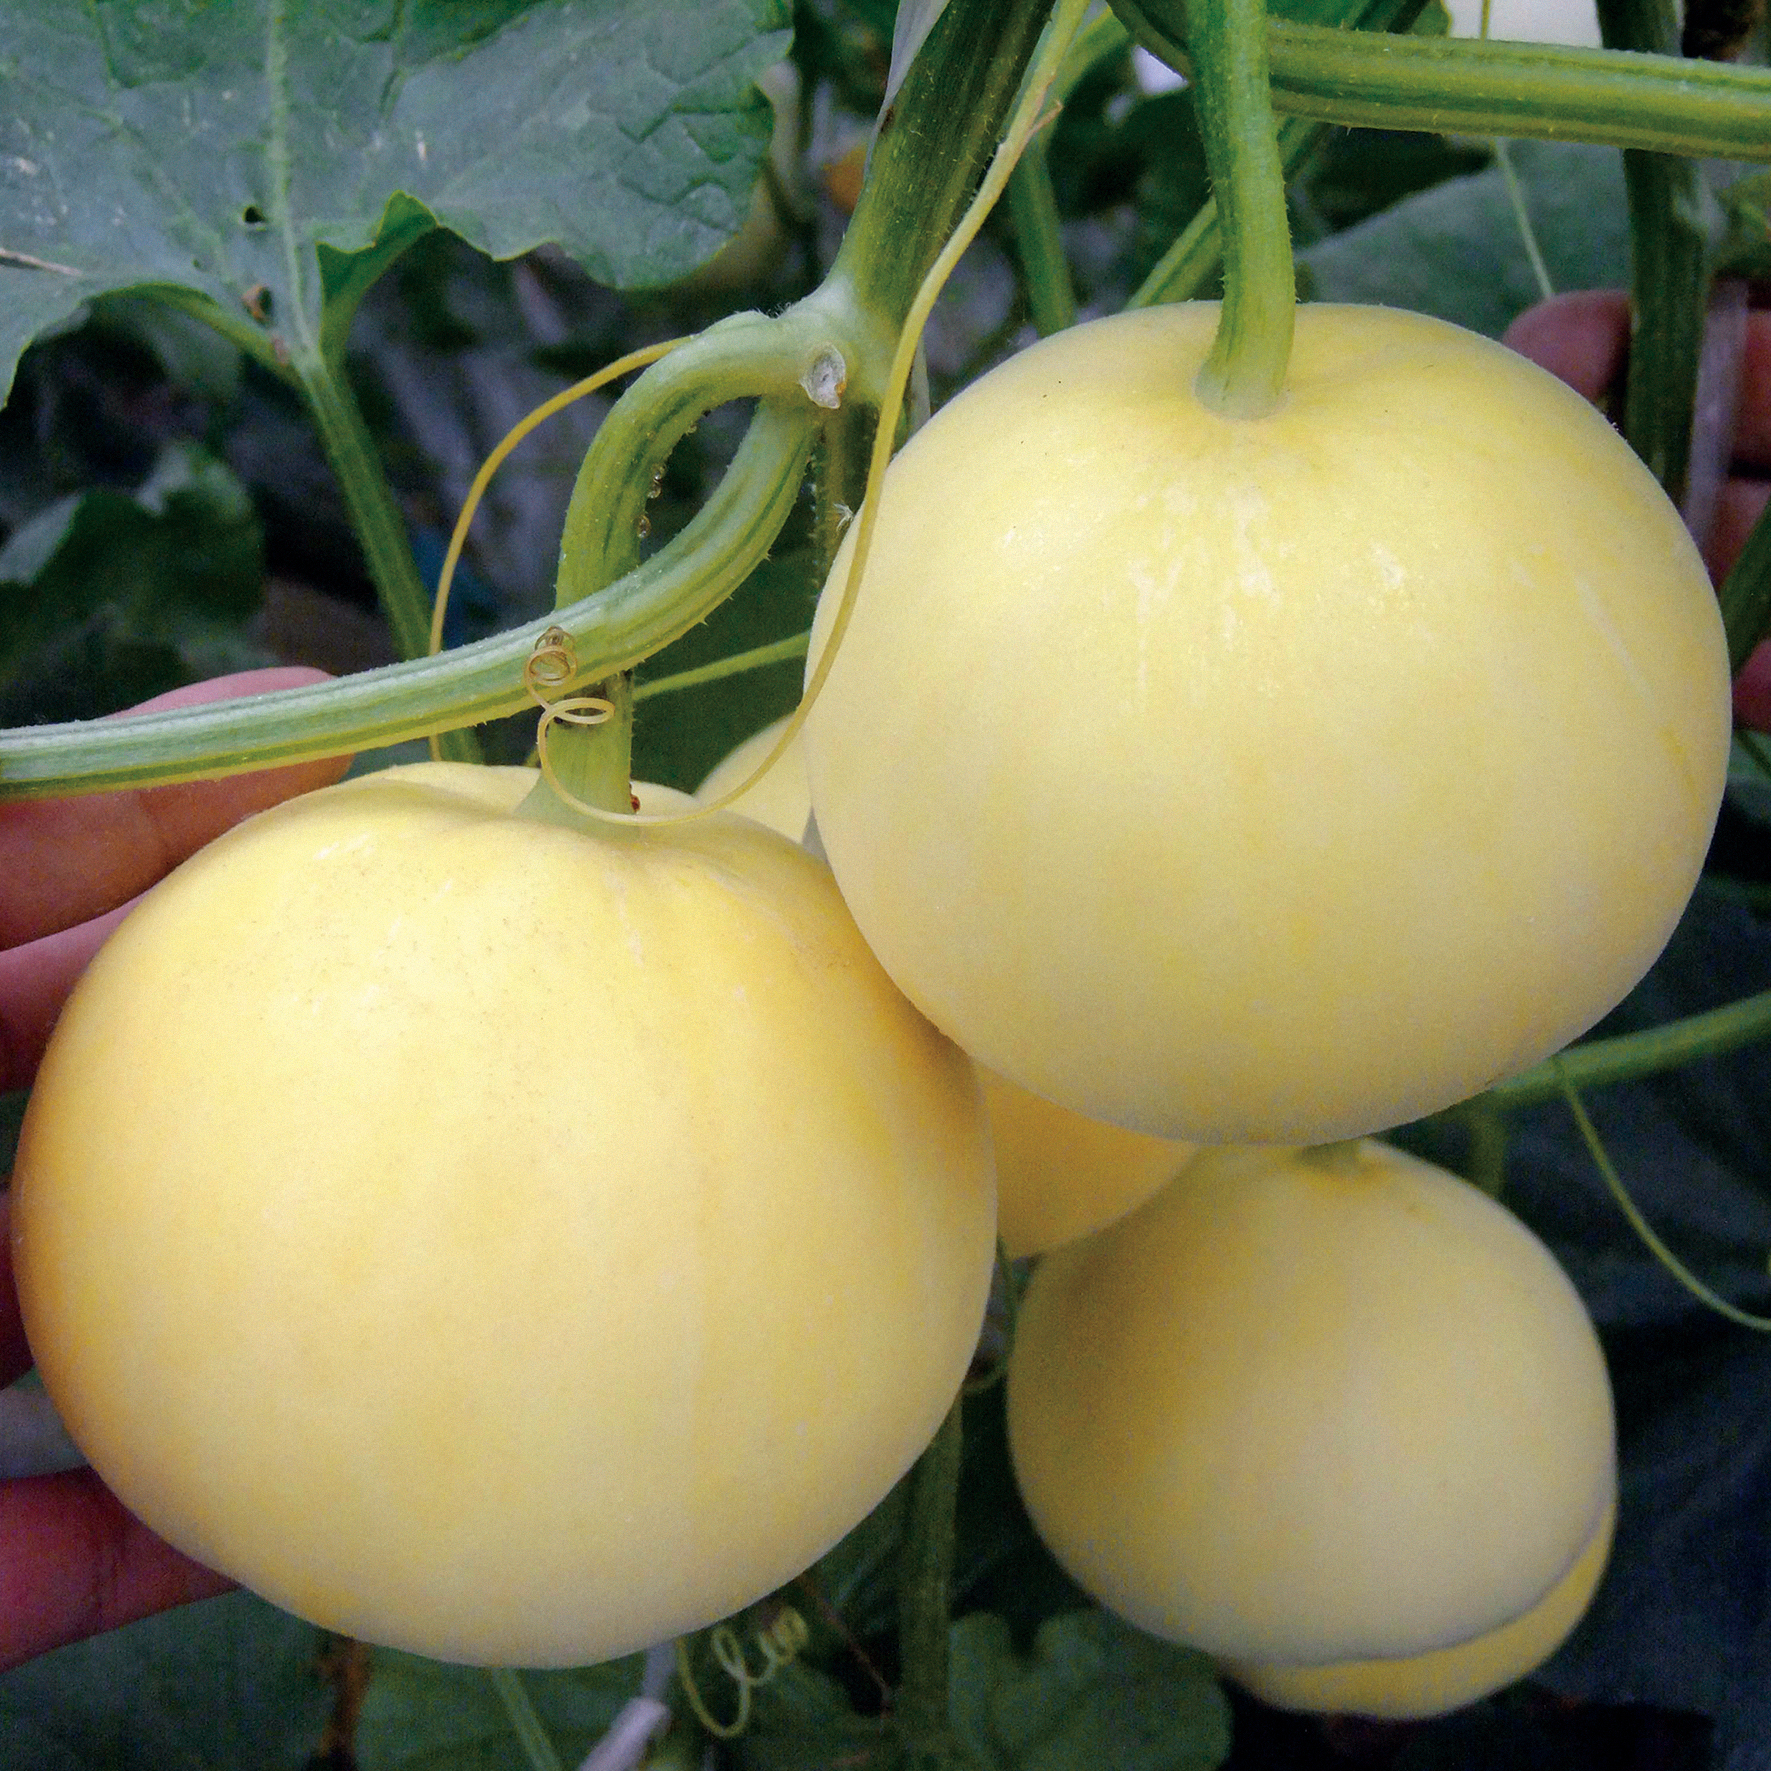 Vynikající adaptabilita hybridních semen pižmového melounu pro pěstování